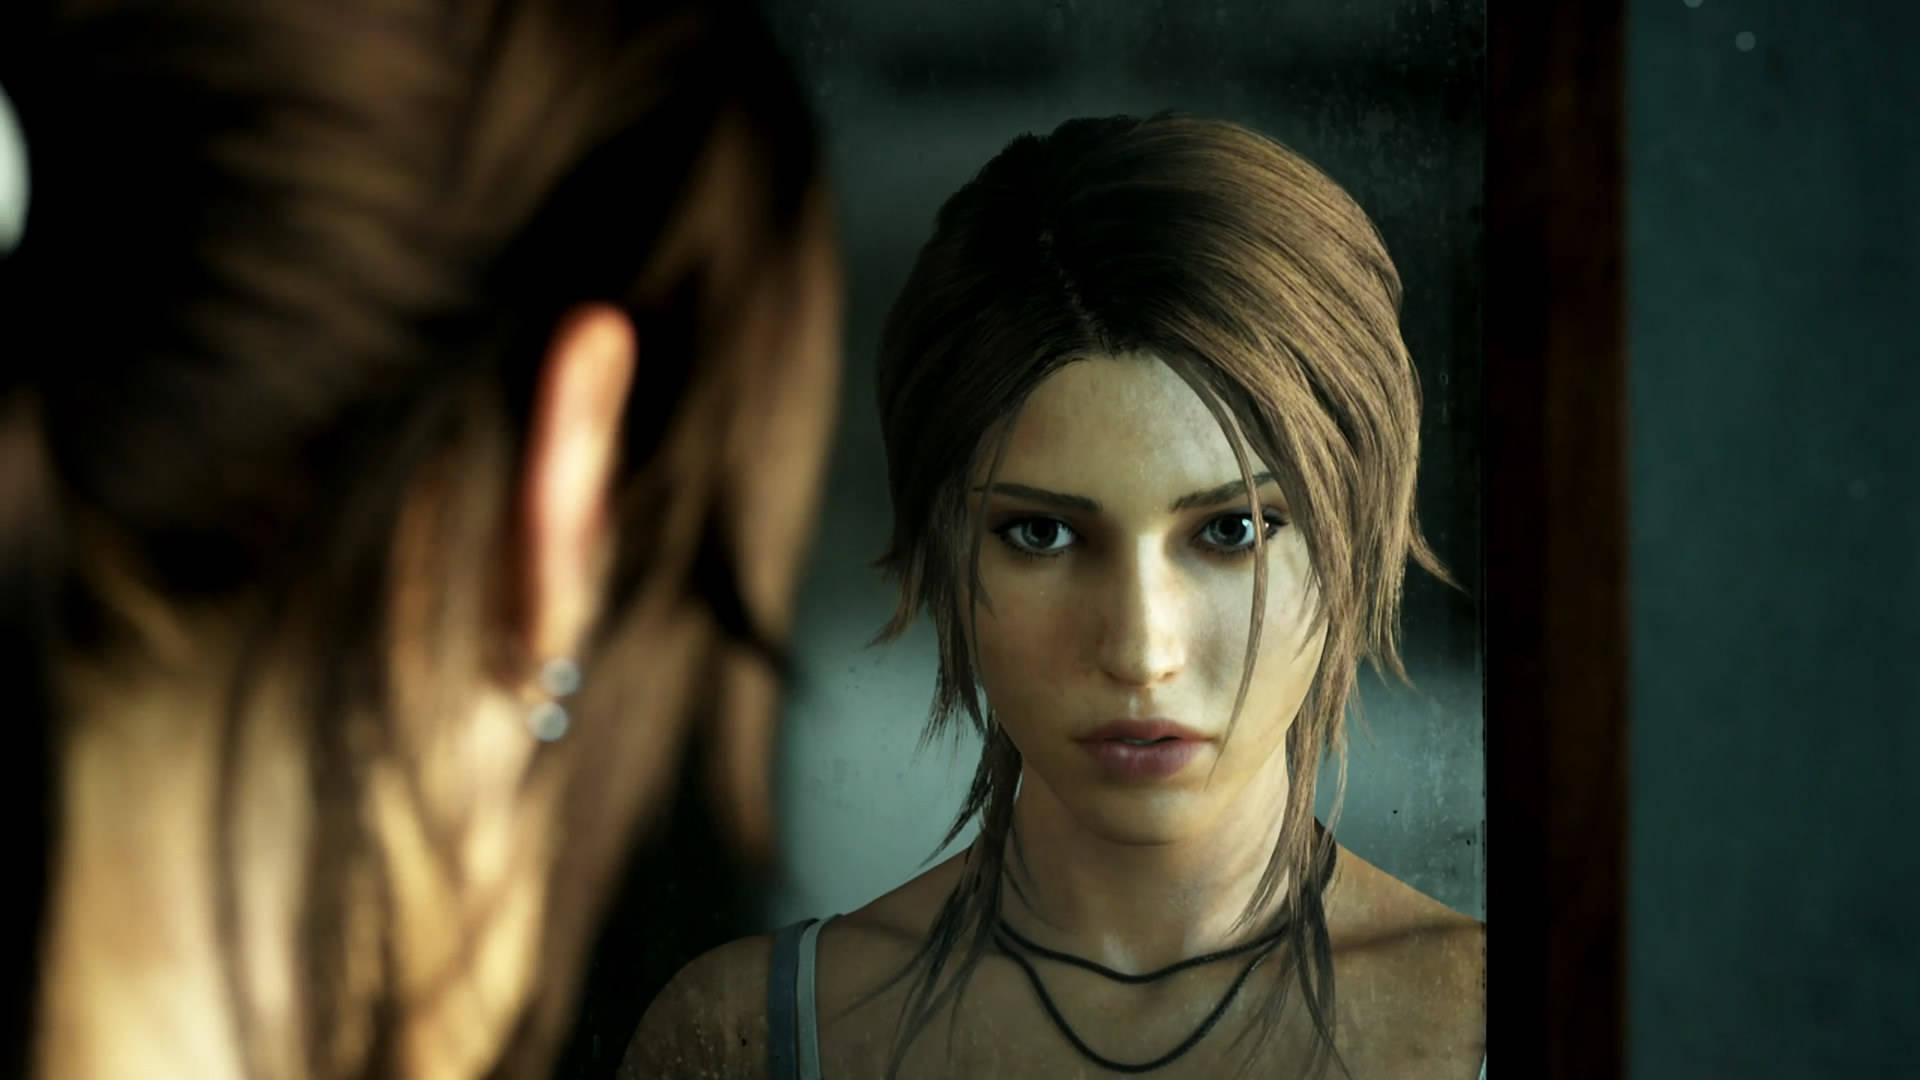 Tombraider 9 - Lara Croft Schaut In Den Spiegel. Wallpaper